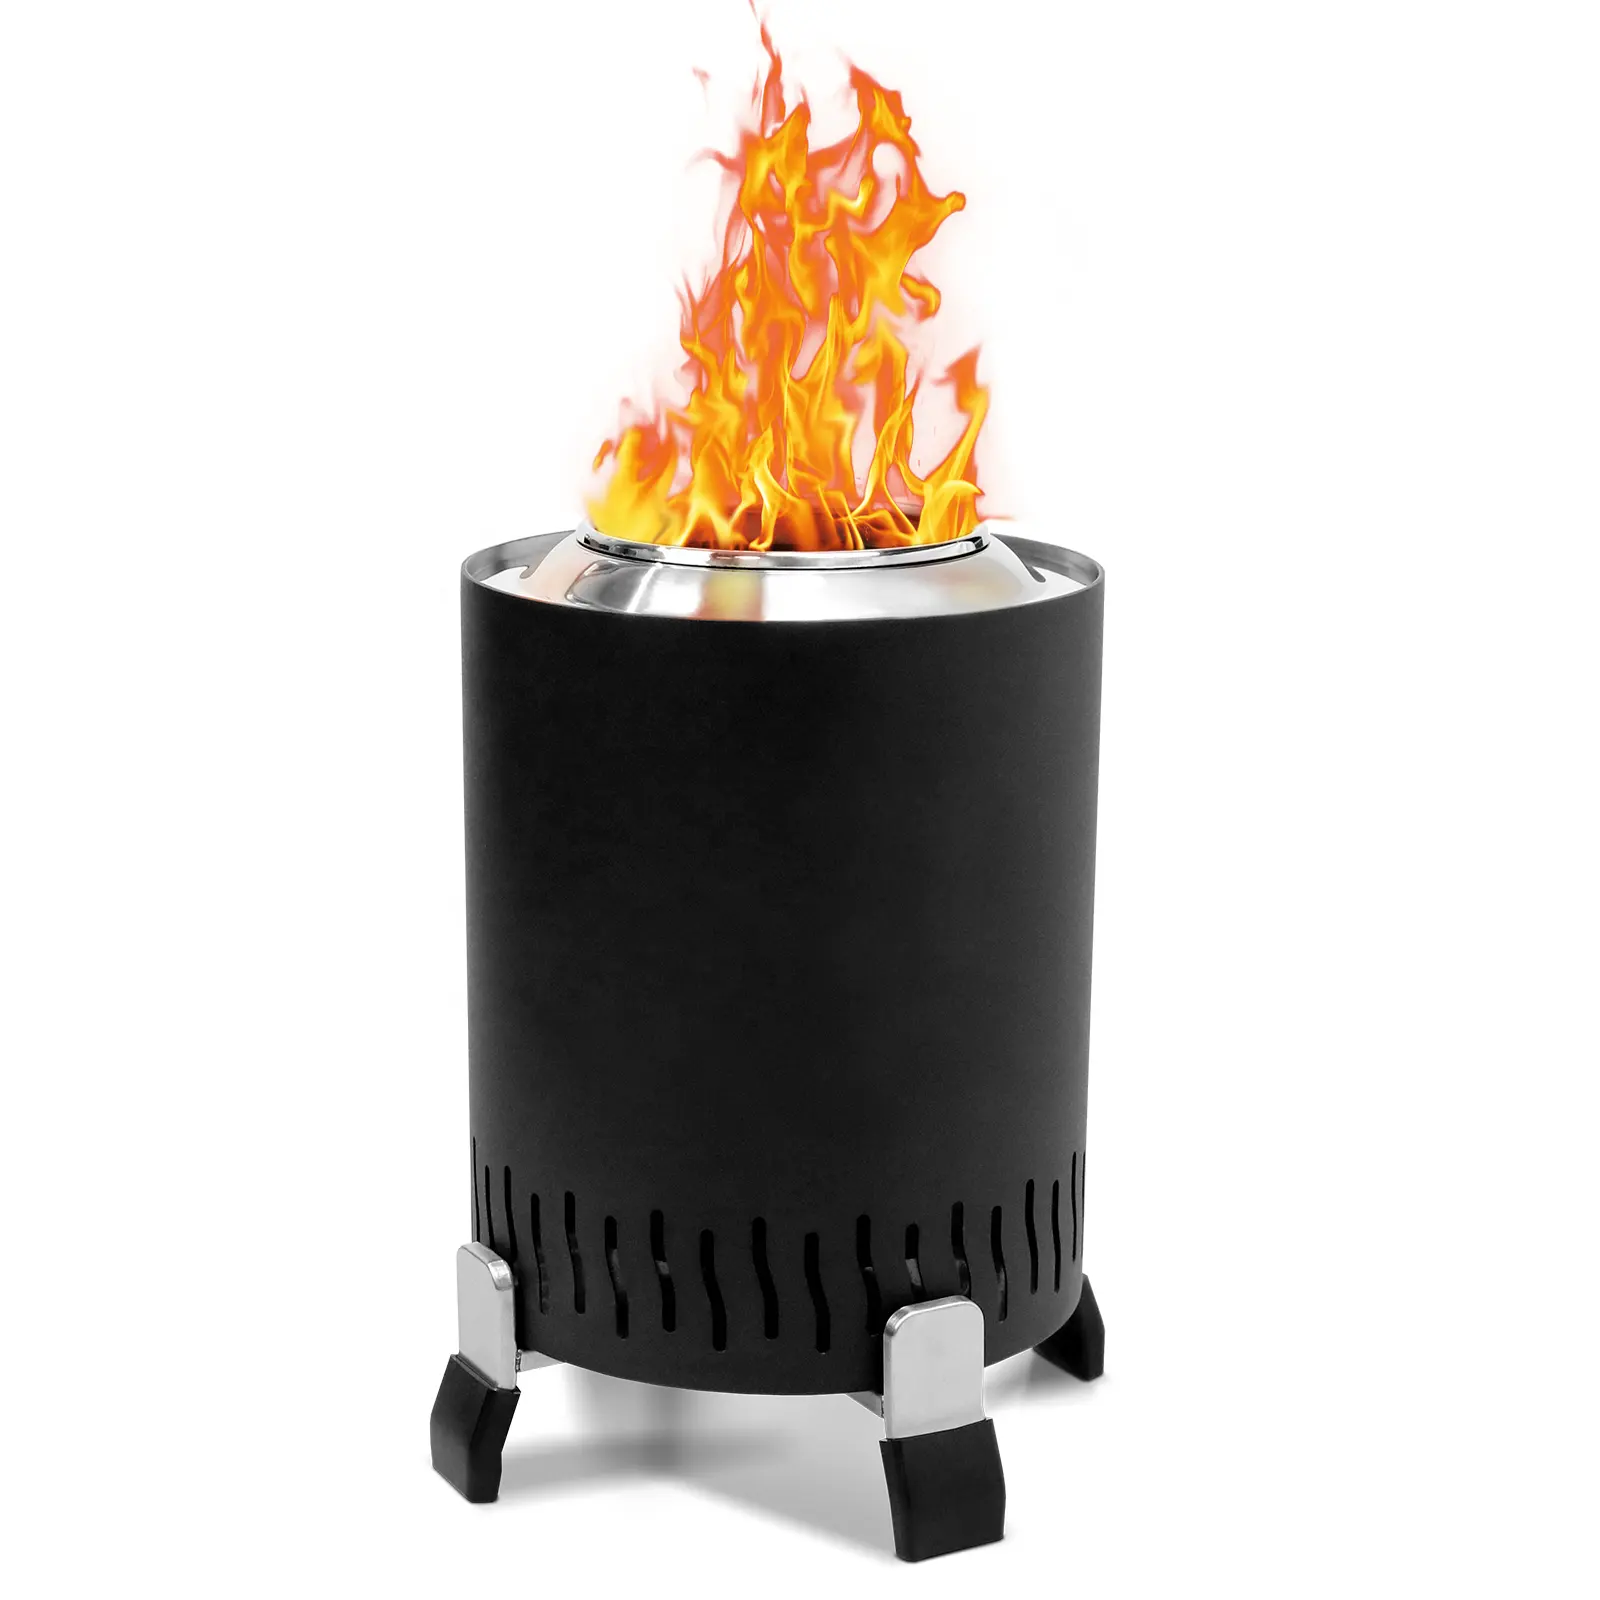 Nuovo design Low Smoke Outdoor Fire Pits Stand caminetti portatili a legna Fire Grill in acciaio inox falò Fire Pit